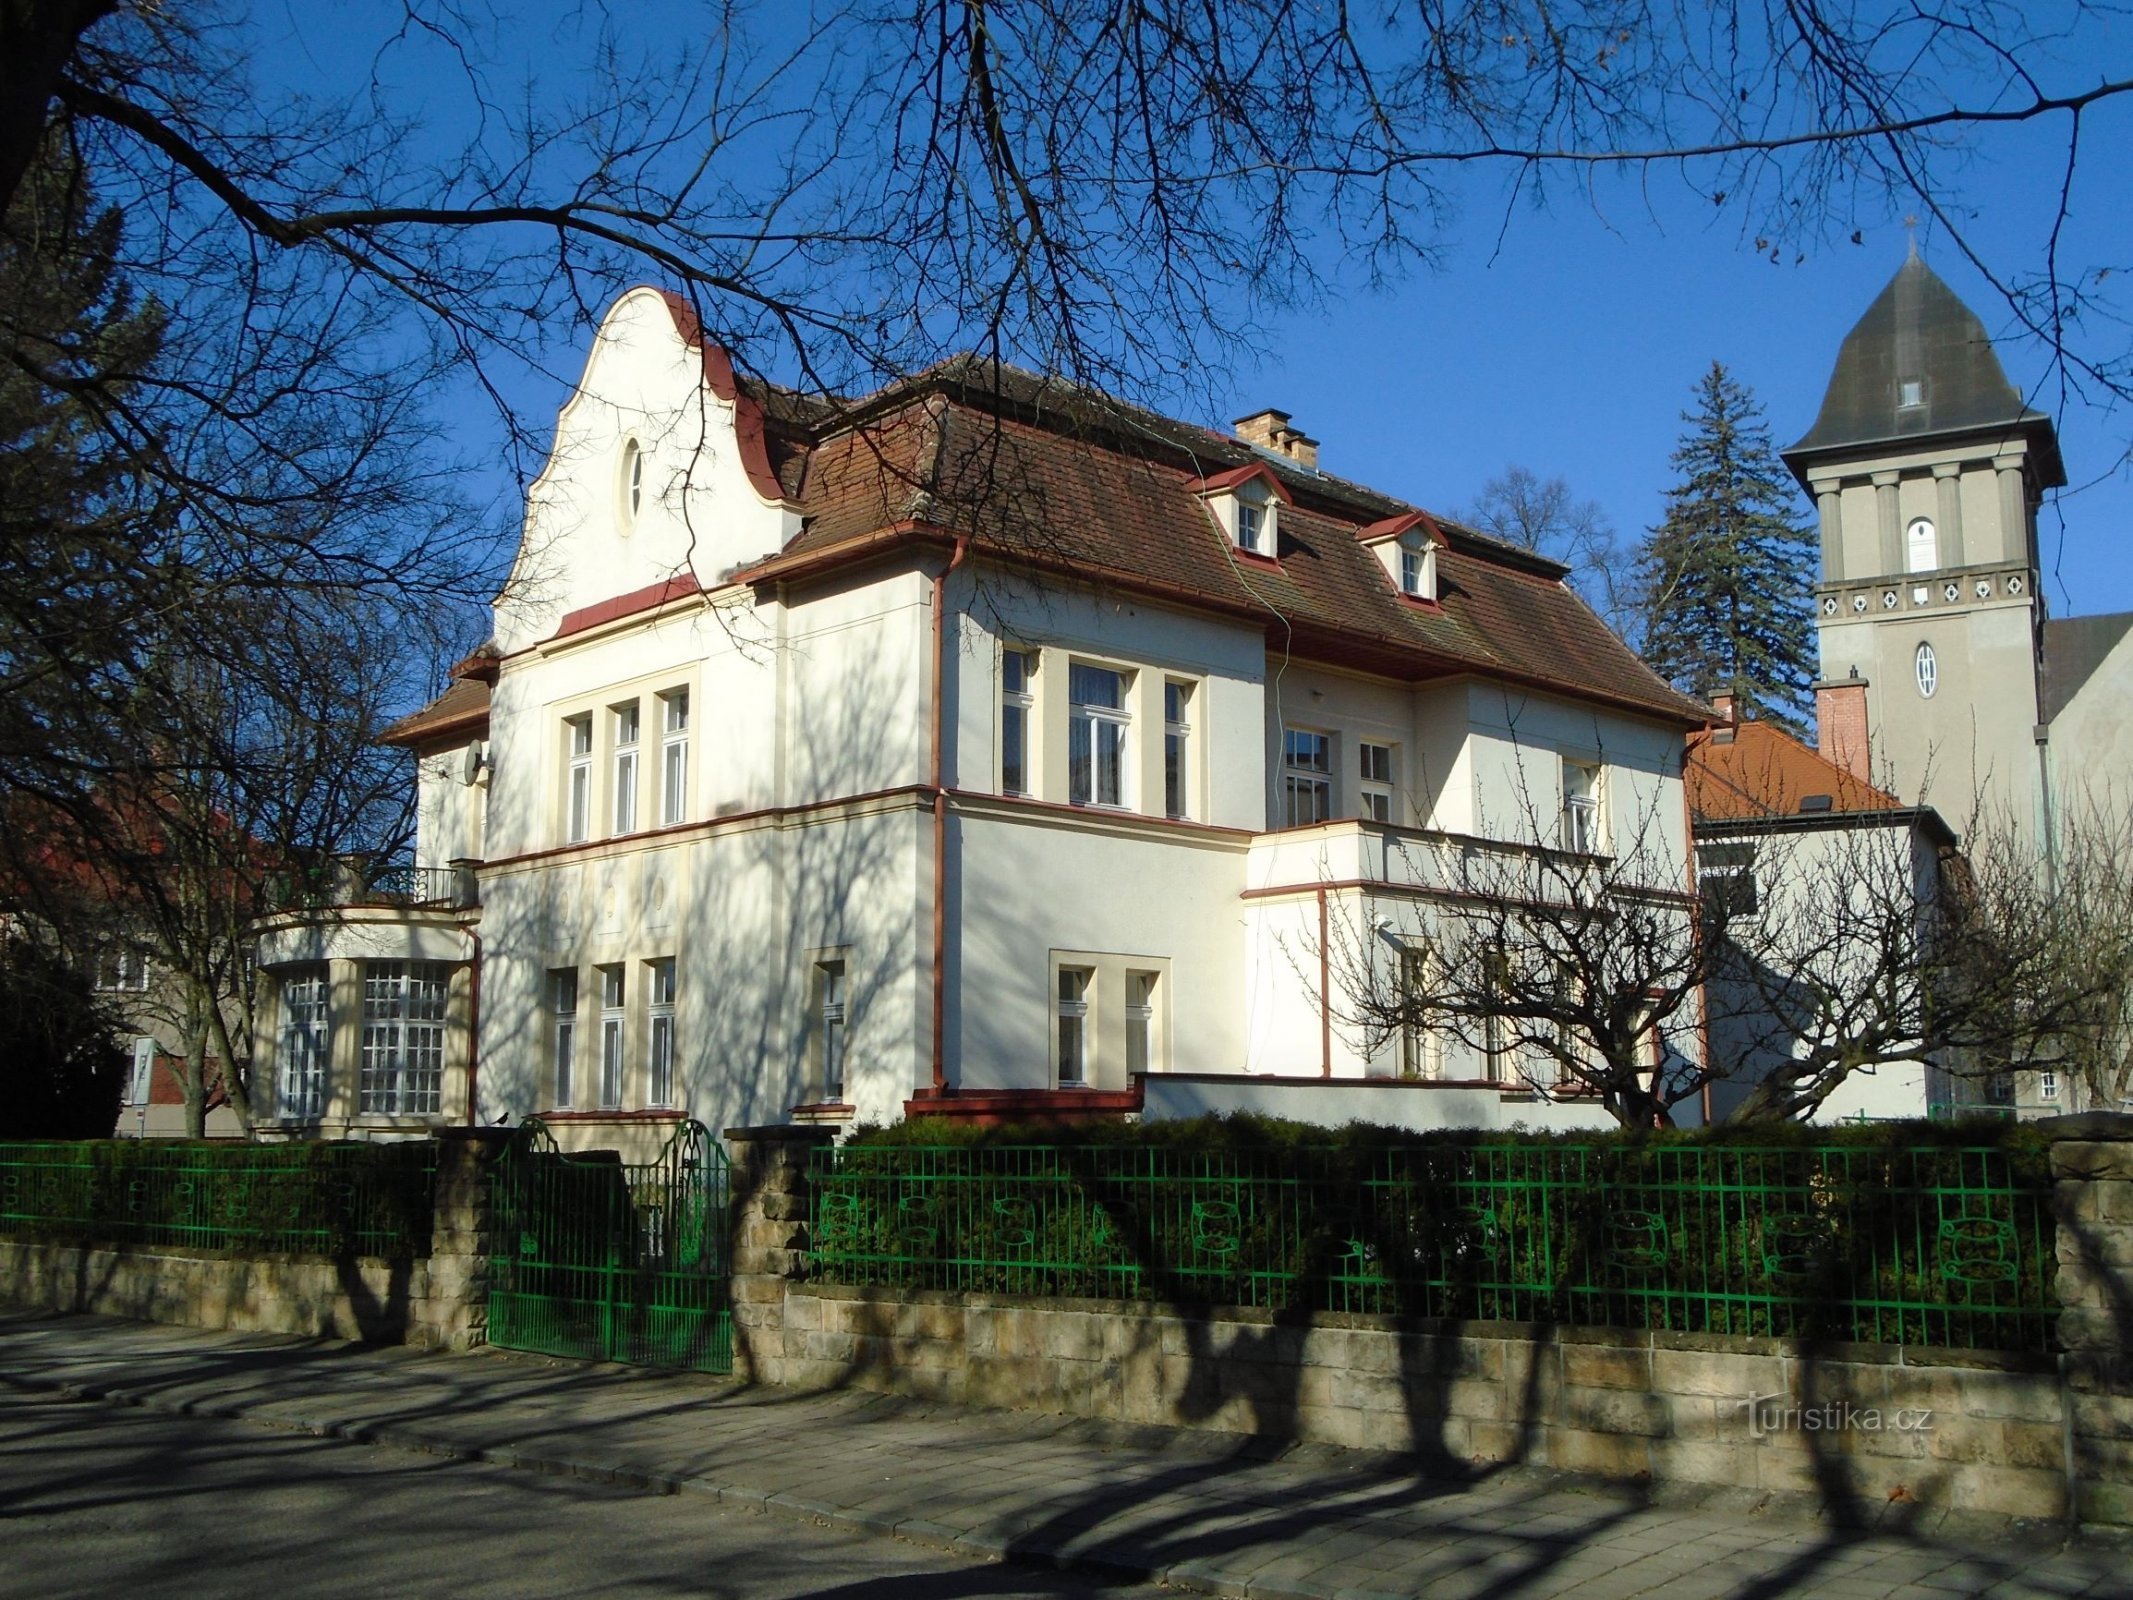 Dvorac br. 545 (Hradec Králové, 7.4.2018. travnja XNUMX.)